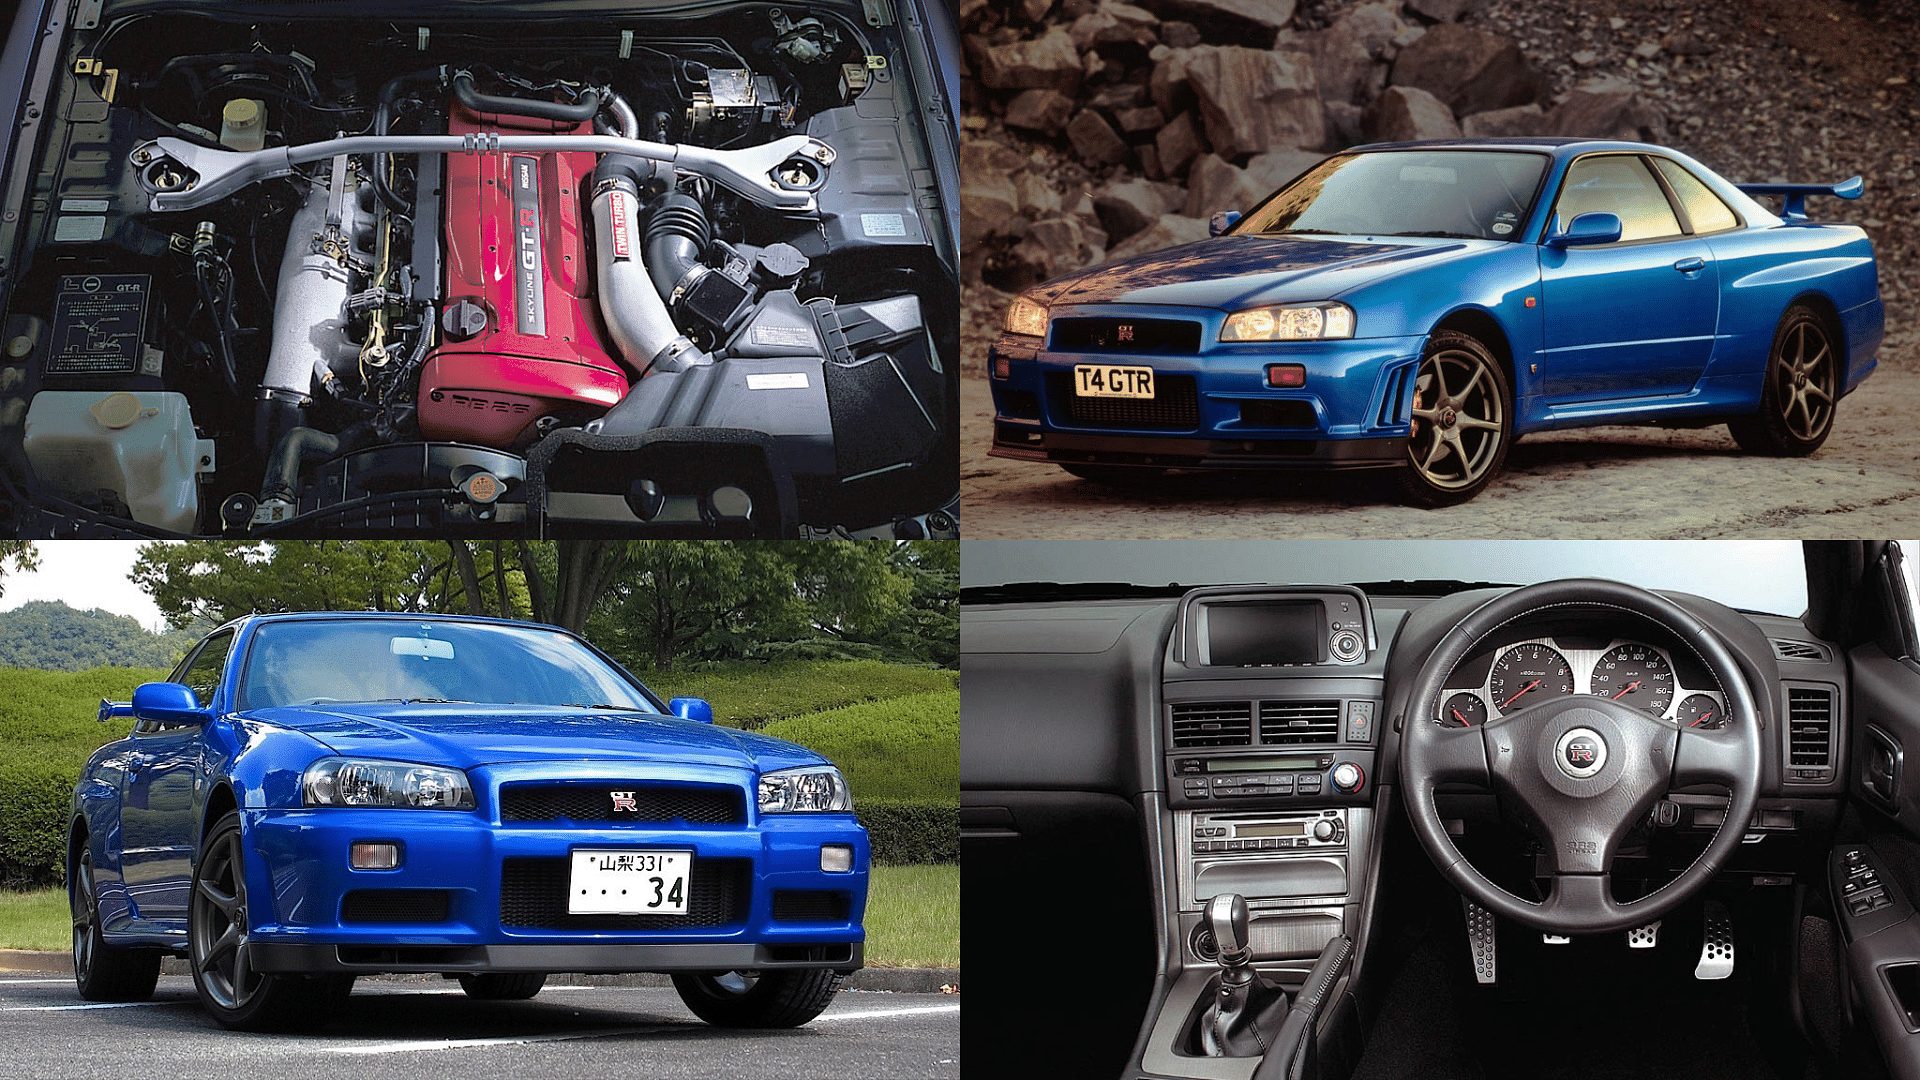 Nissan Skyline R34 GT-R - front view, engine, interior